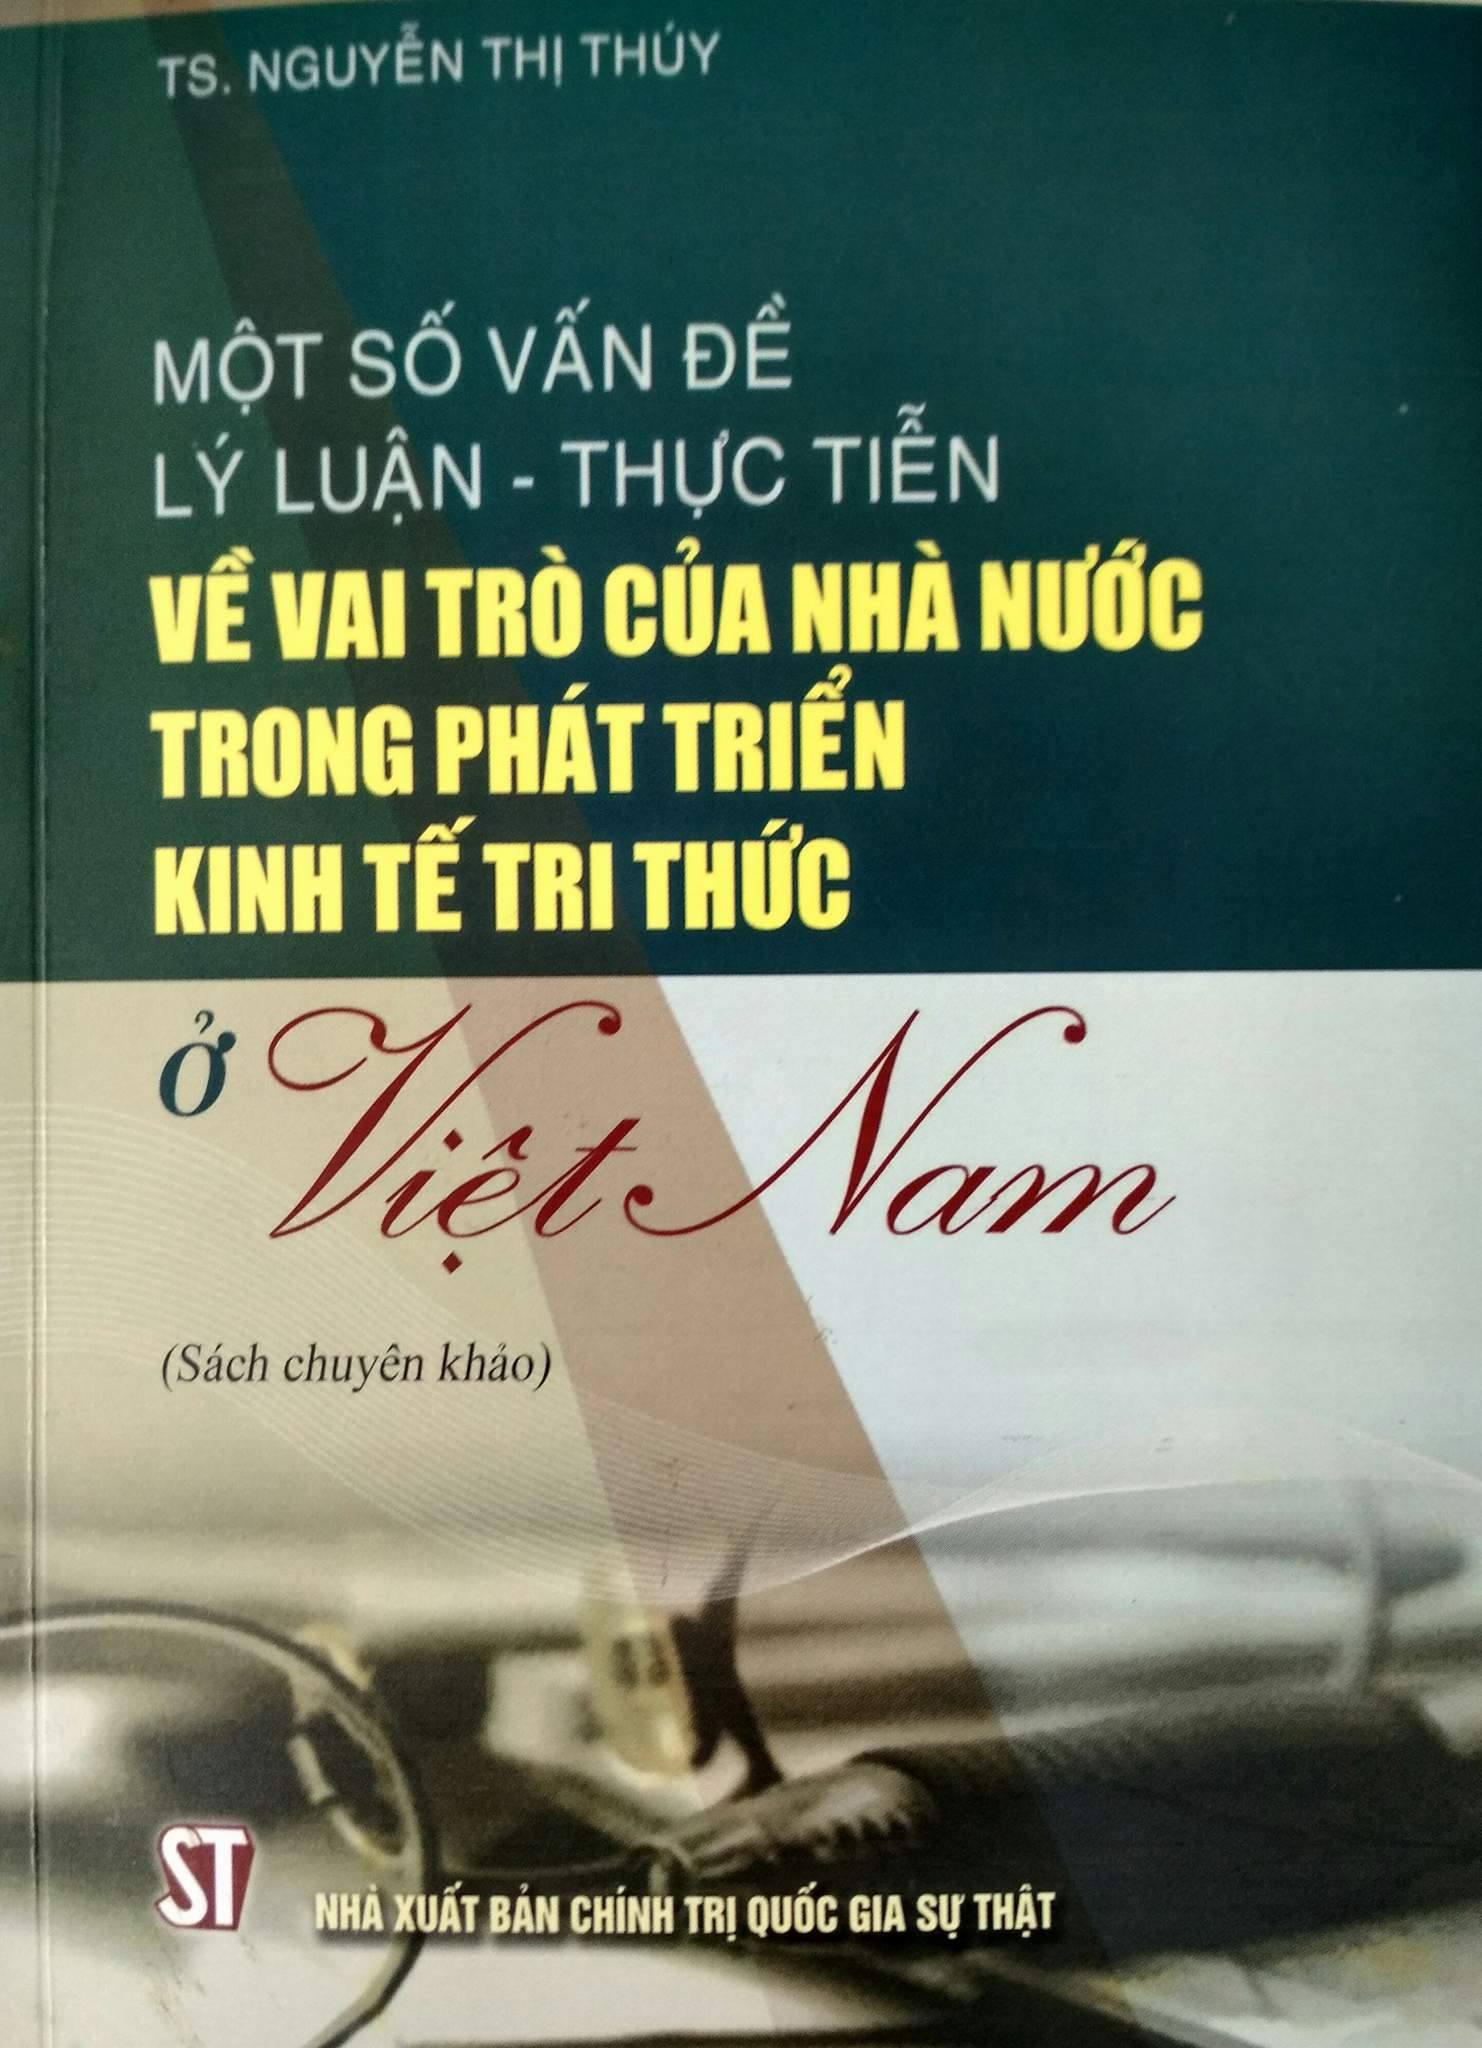 Một số vấn đề lý luận – thực tiễn về vai trò của Nhà nước trong phát triển kinh tế tri thức ở Việt Nam